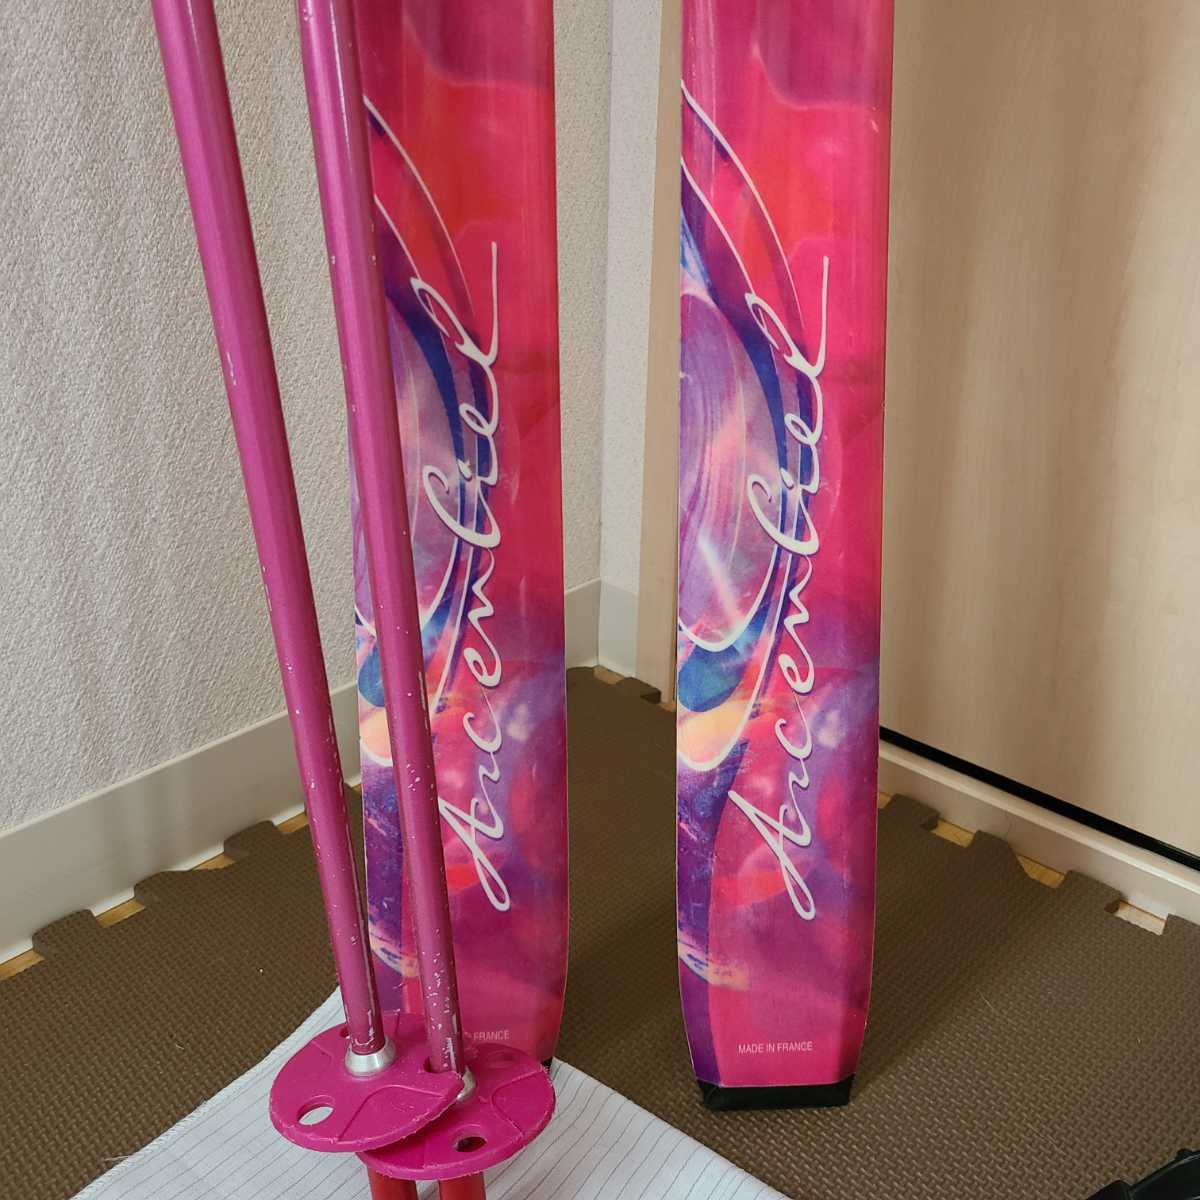 SALOMON スキー ストック スキー靴 3点セット サロモン ピンク かわいい スキー板 ビンディング スキーブーツ